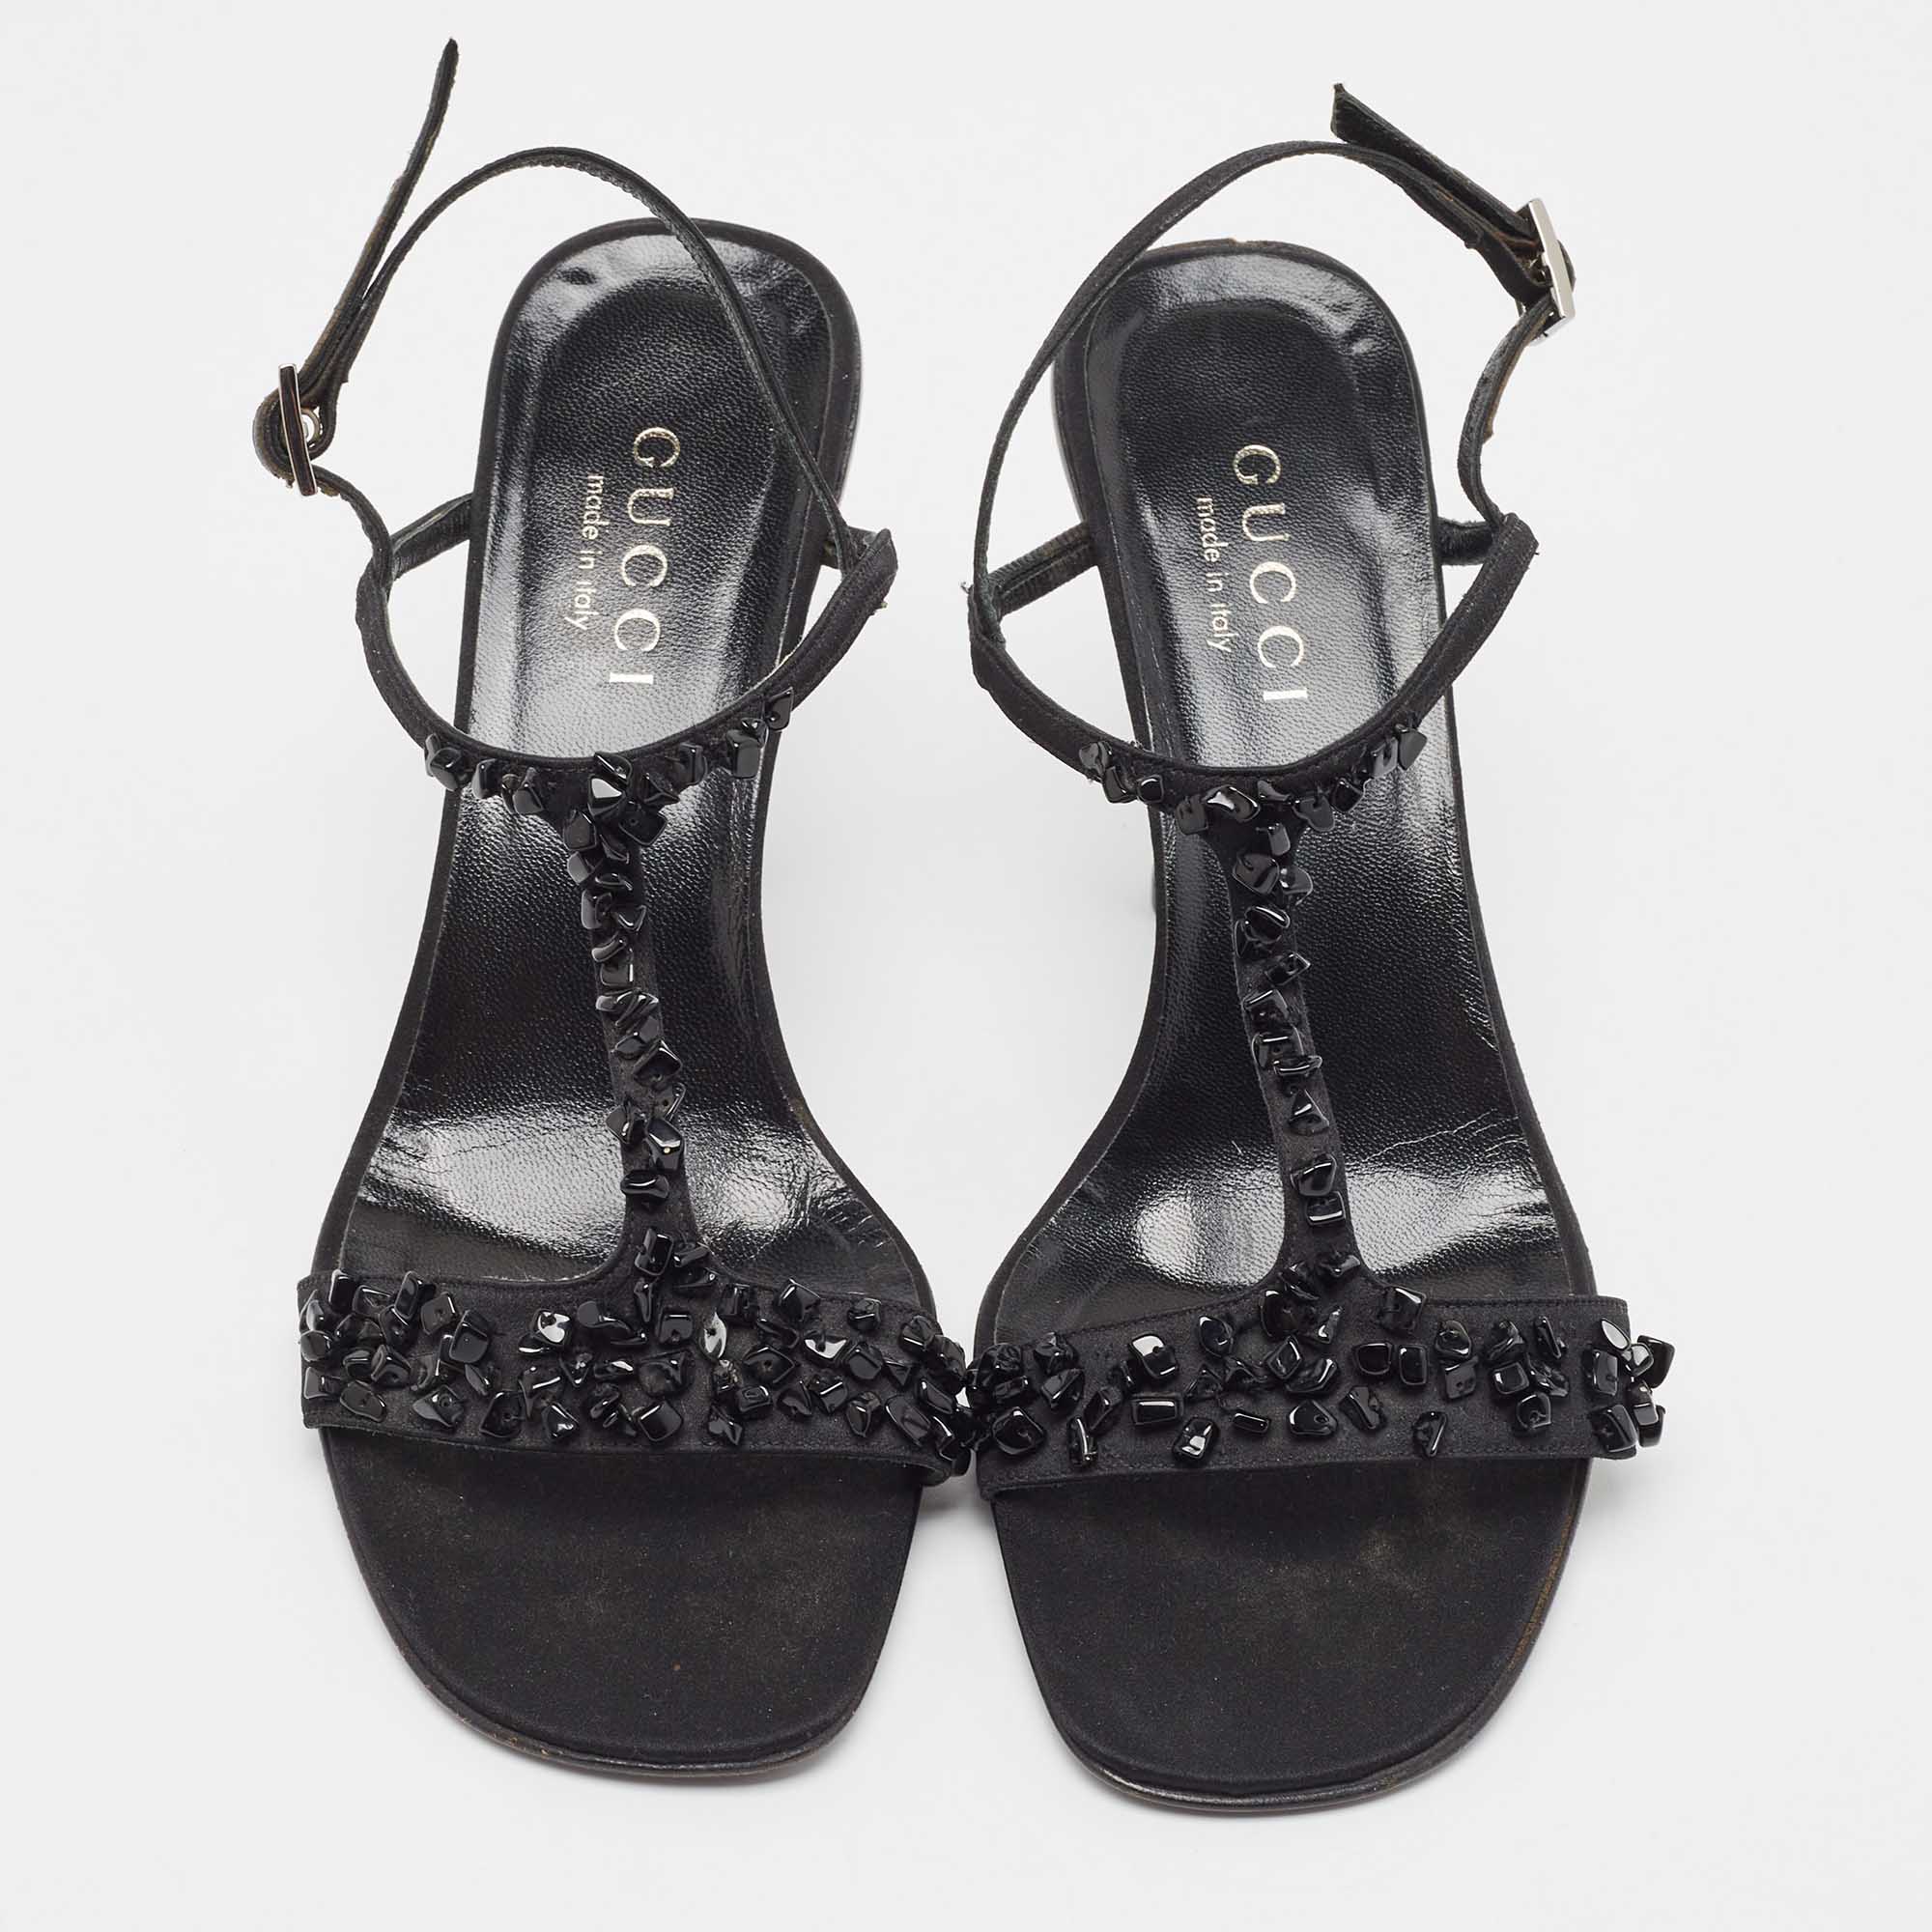 Gucci Black Satin Crystal Embellished Ankle Strap Sandals Size 37.5